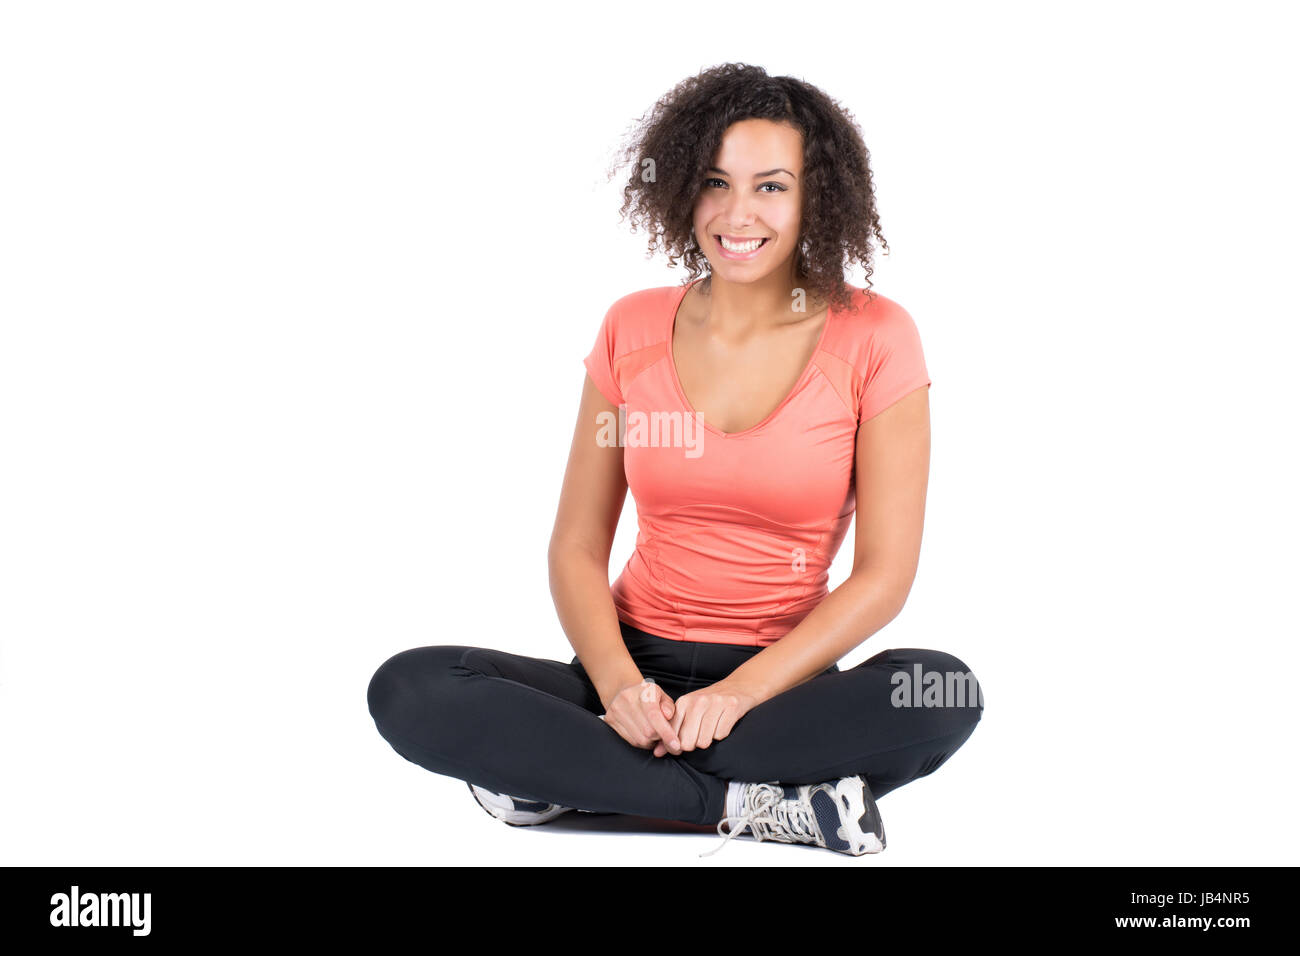 Freigestelltes Foto einer jungen Frau in Sportkleidung, die im Schneidersitz Platz genommen hat Stock Photo